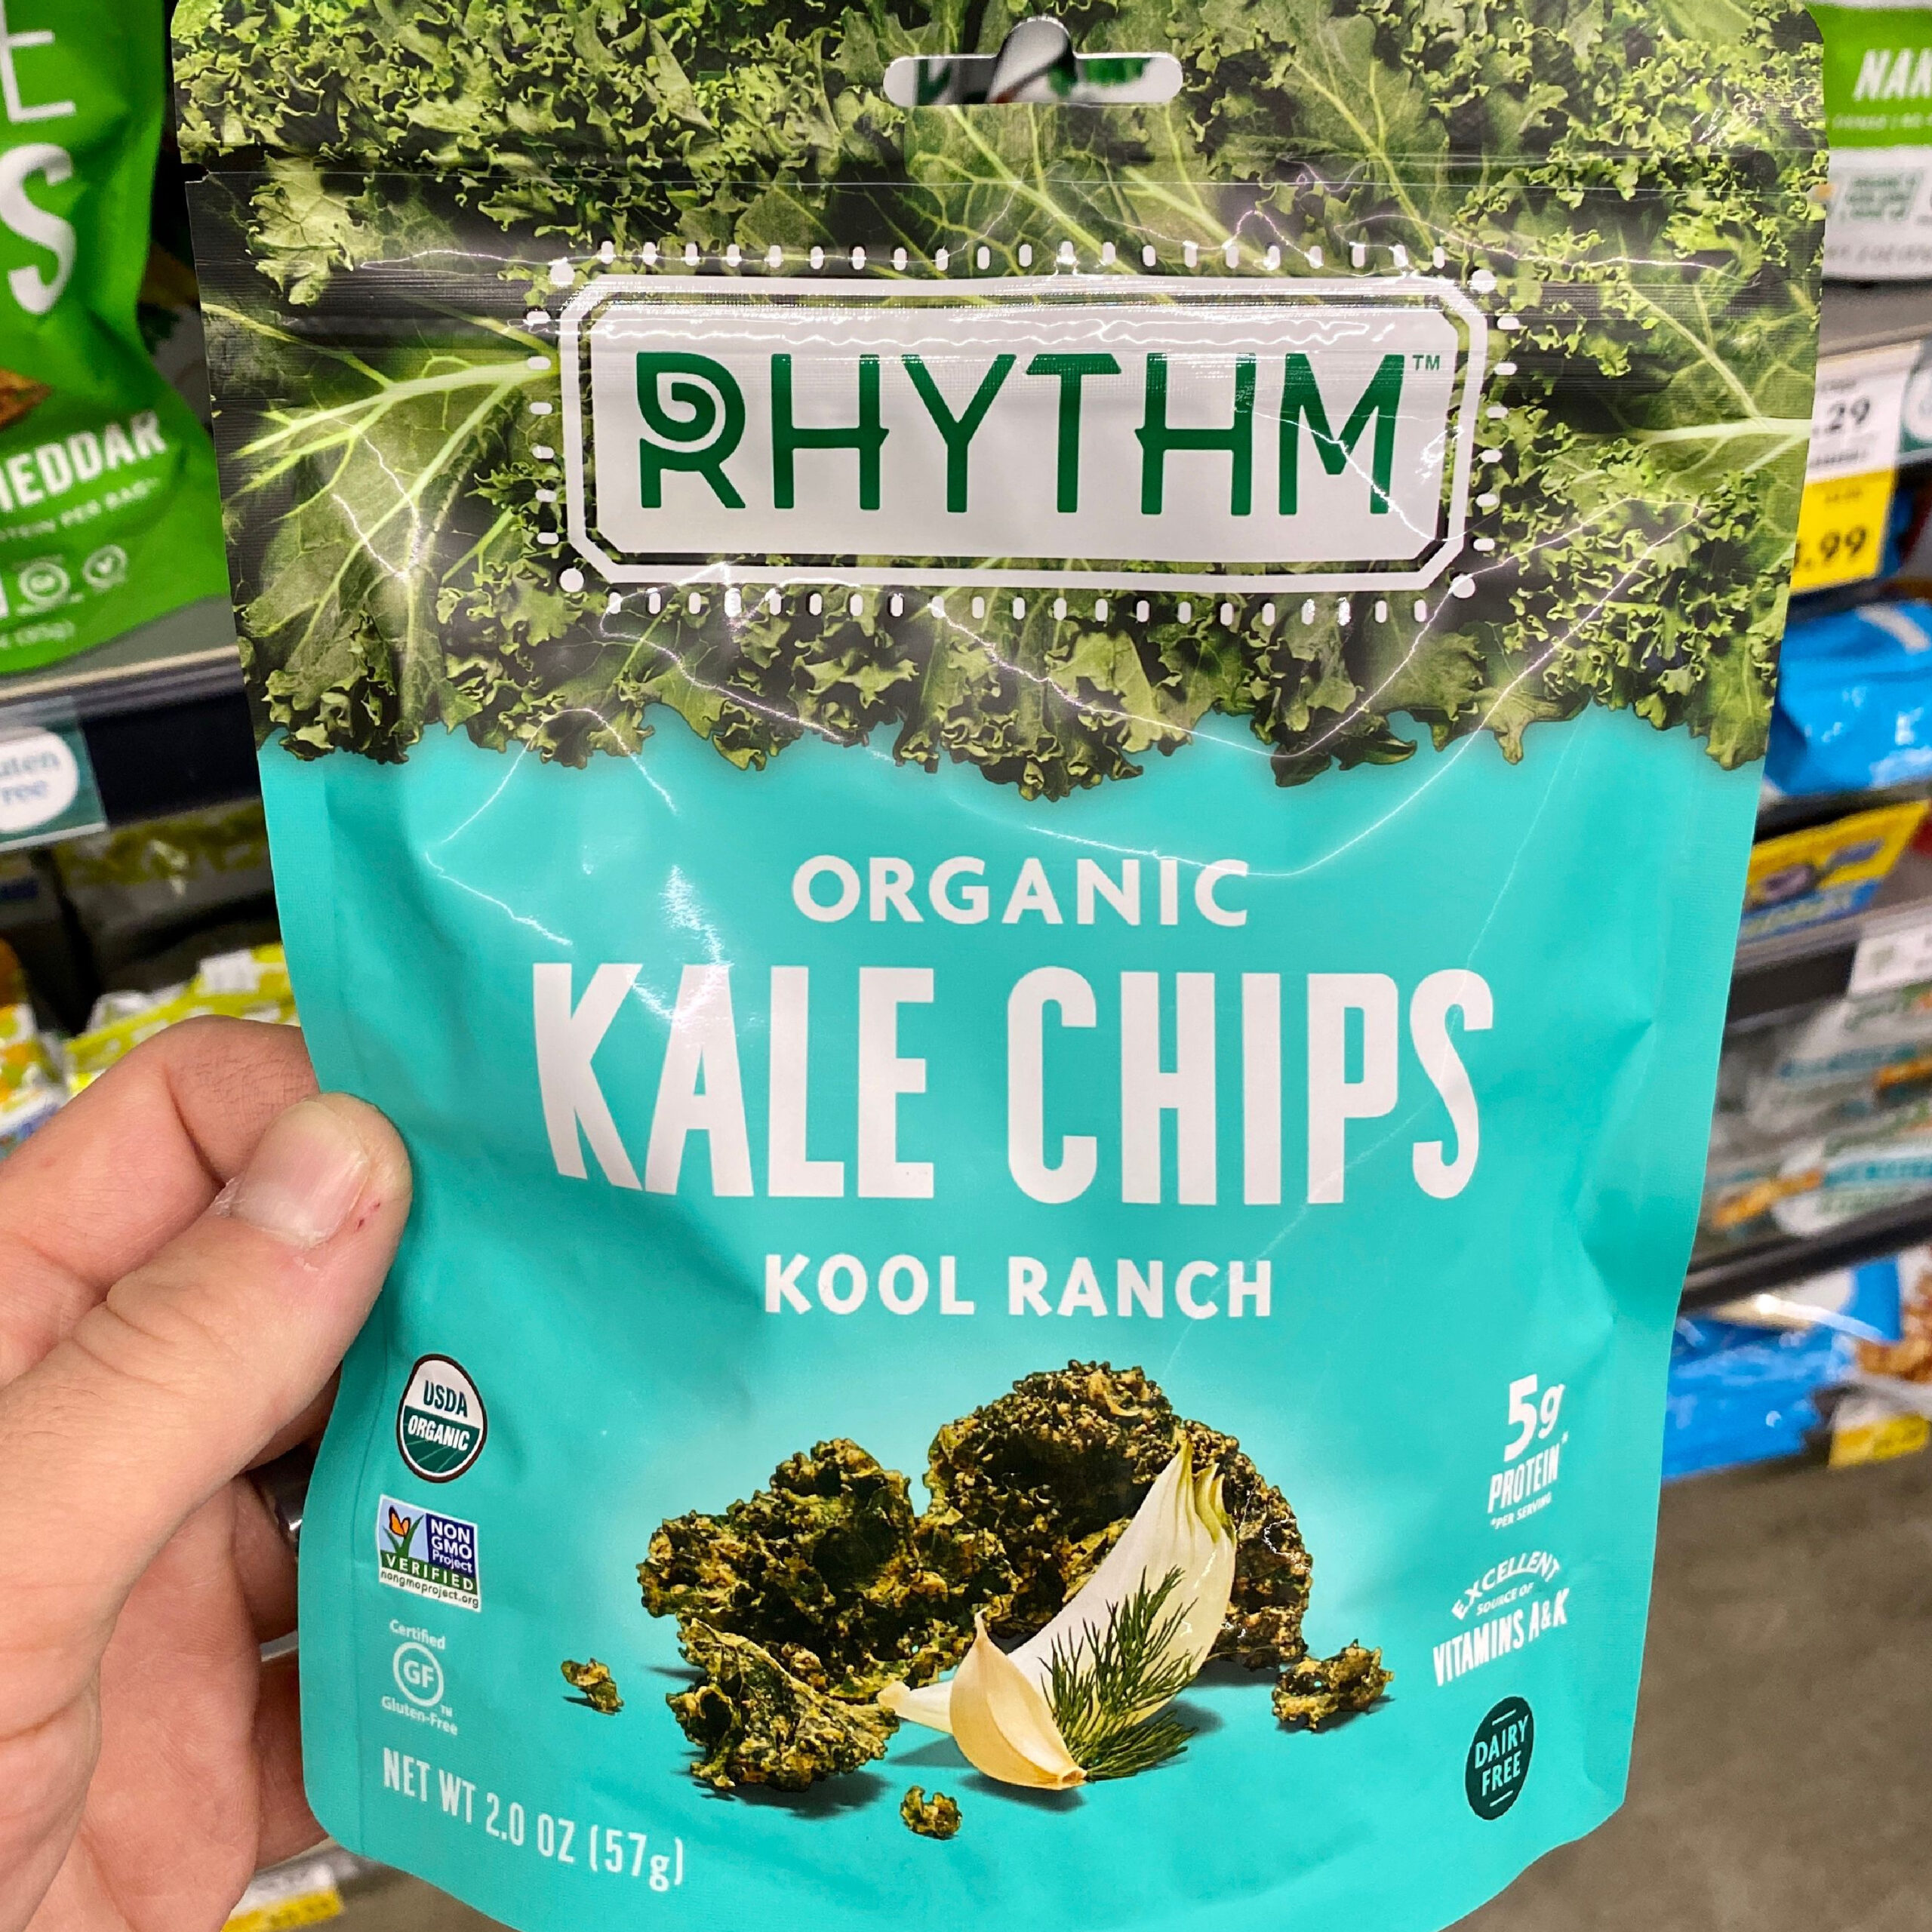 Bag of kale chips